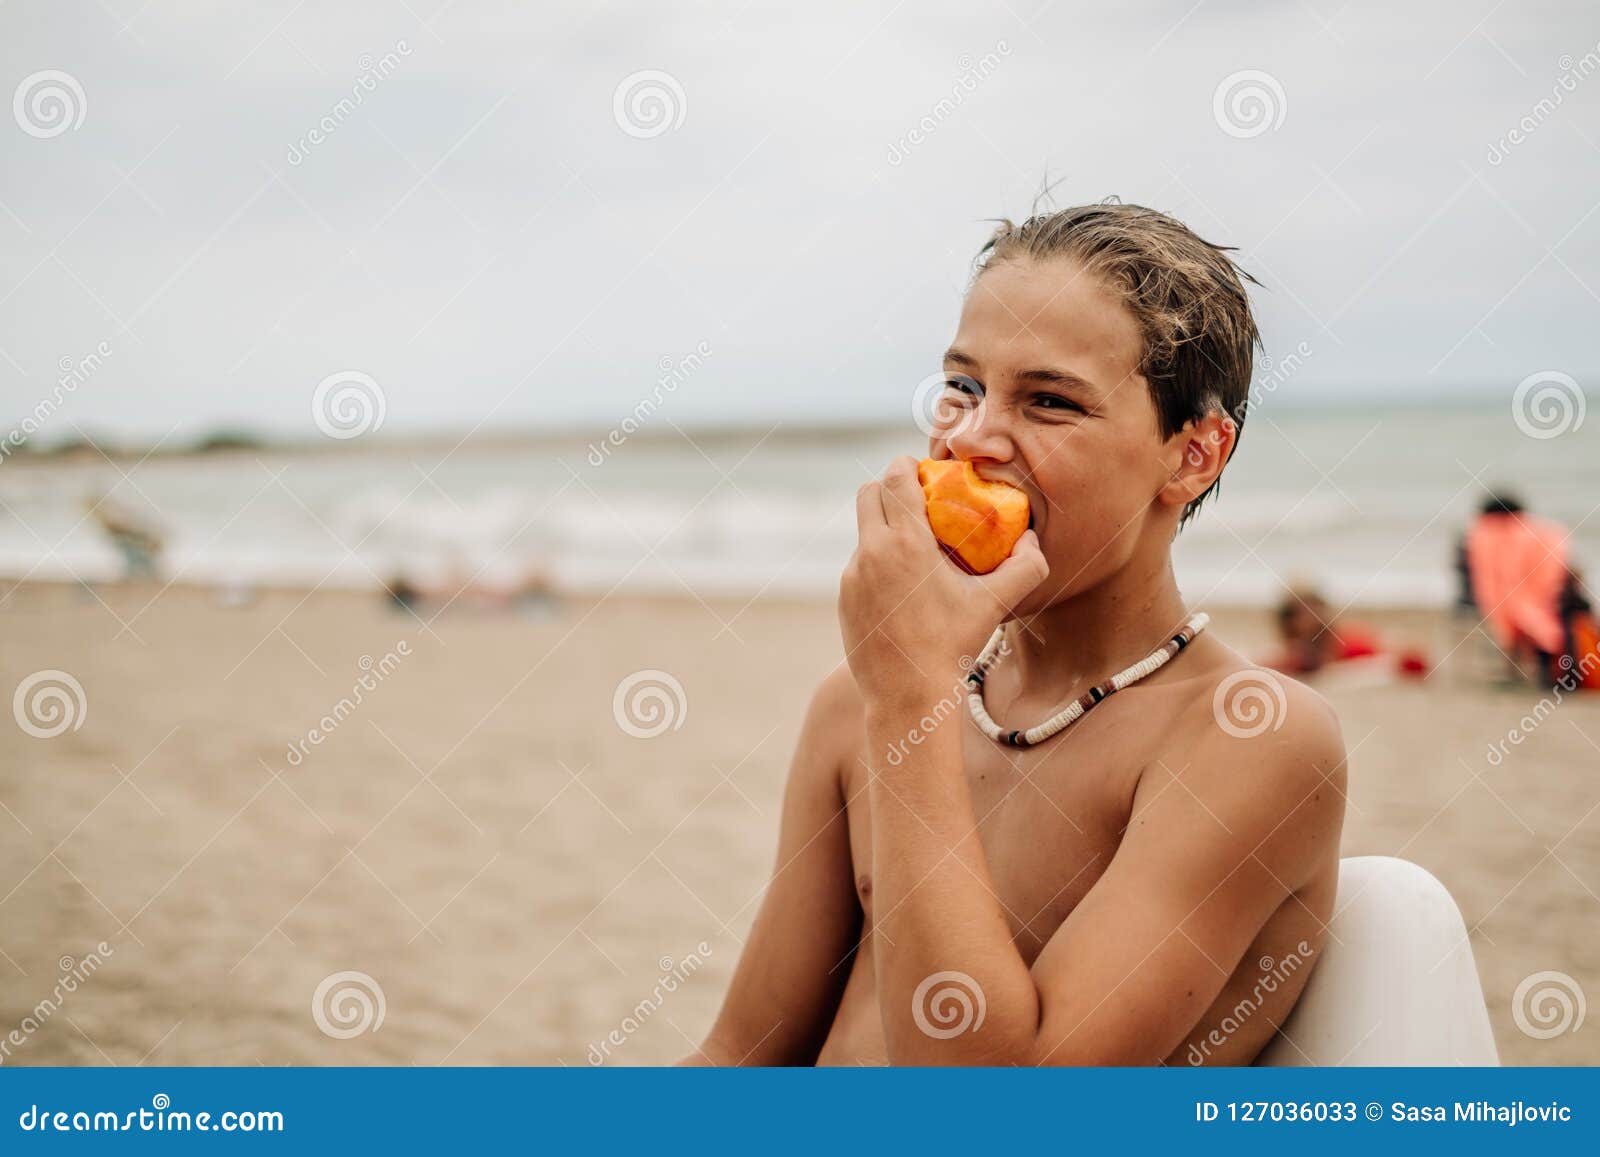 Peach at the beach